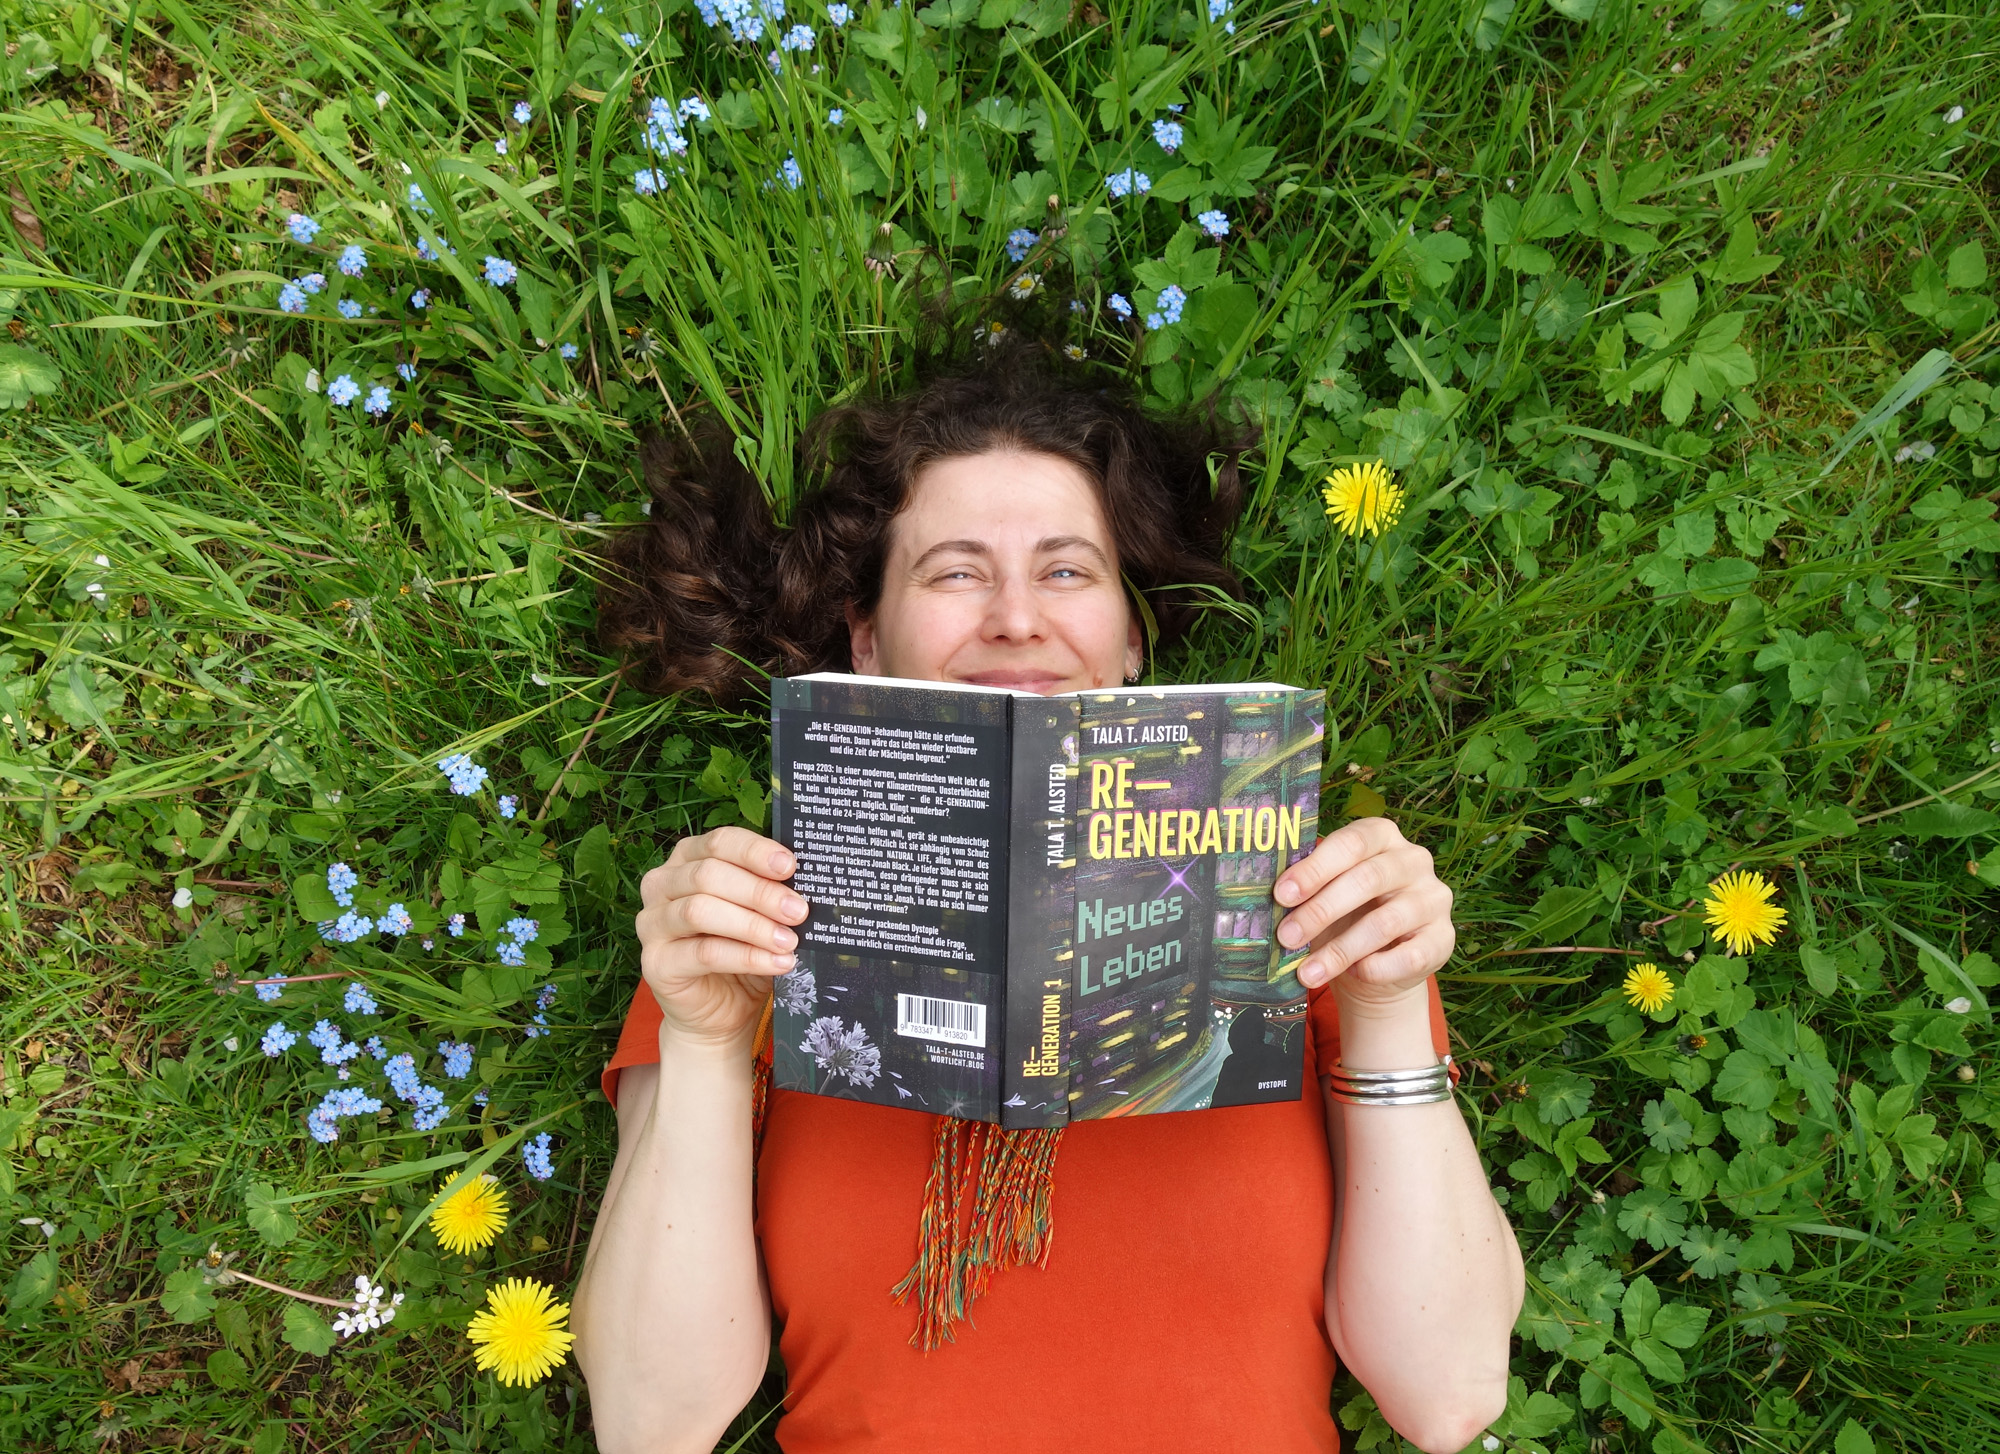 Tala T. Alsted mit ihrem Buch "RE-GENERATION - Neues Leben" auf einer Wiese mit Löwenzahn- und Vergissmeinnicht-Blüten